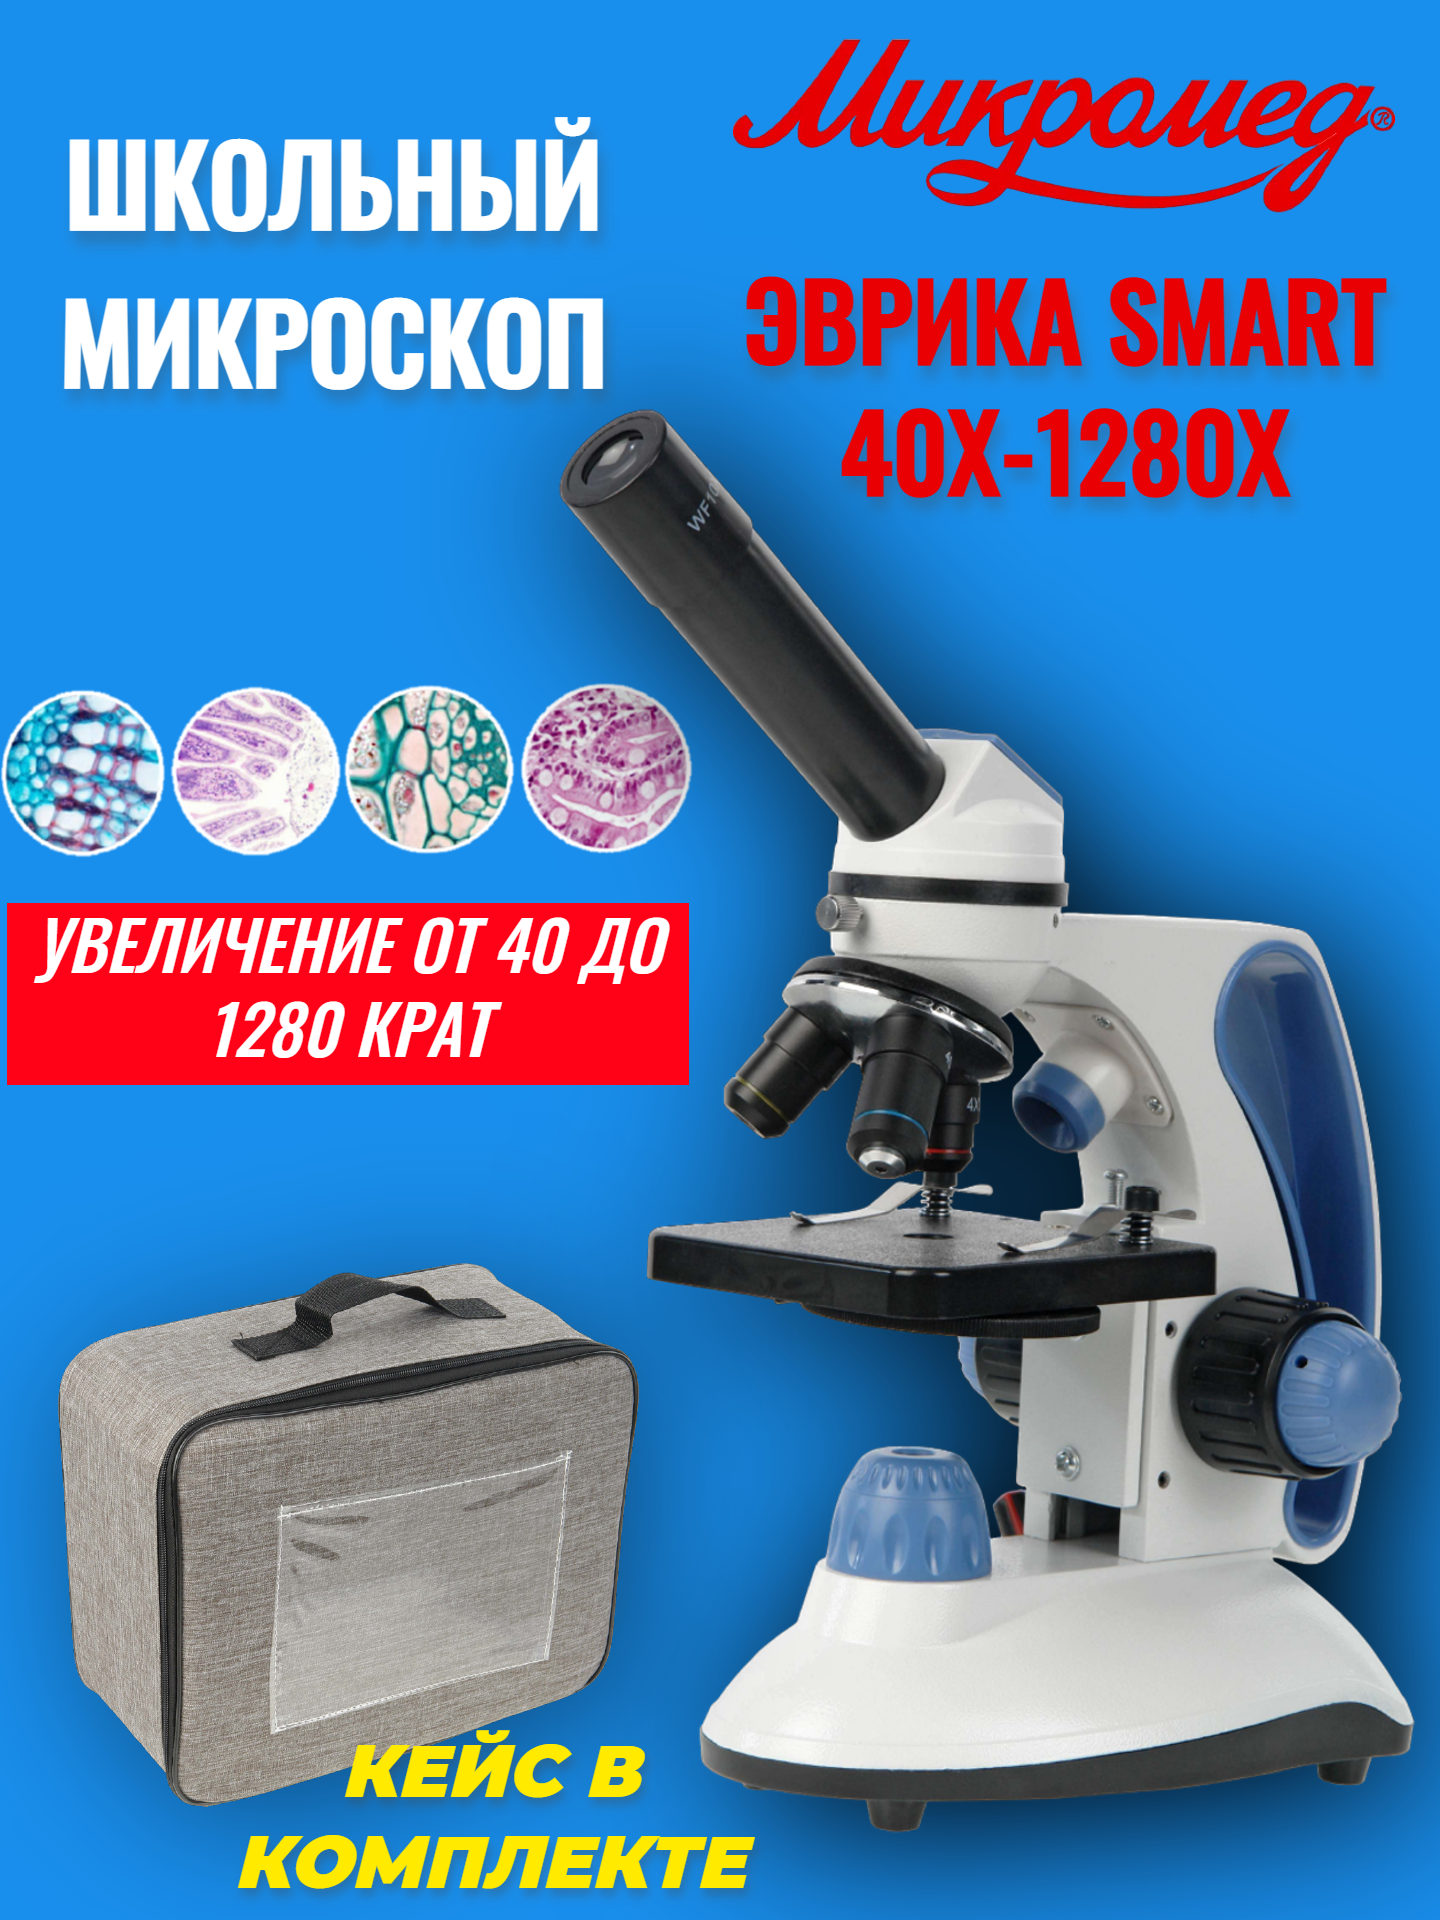 Микроскоп школьный учебный Микромед Эврика SMART 40х-1280х в текстильном кейсе фазово контрастное устройство микромед 3 м